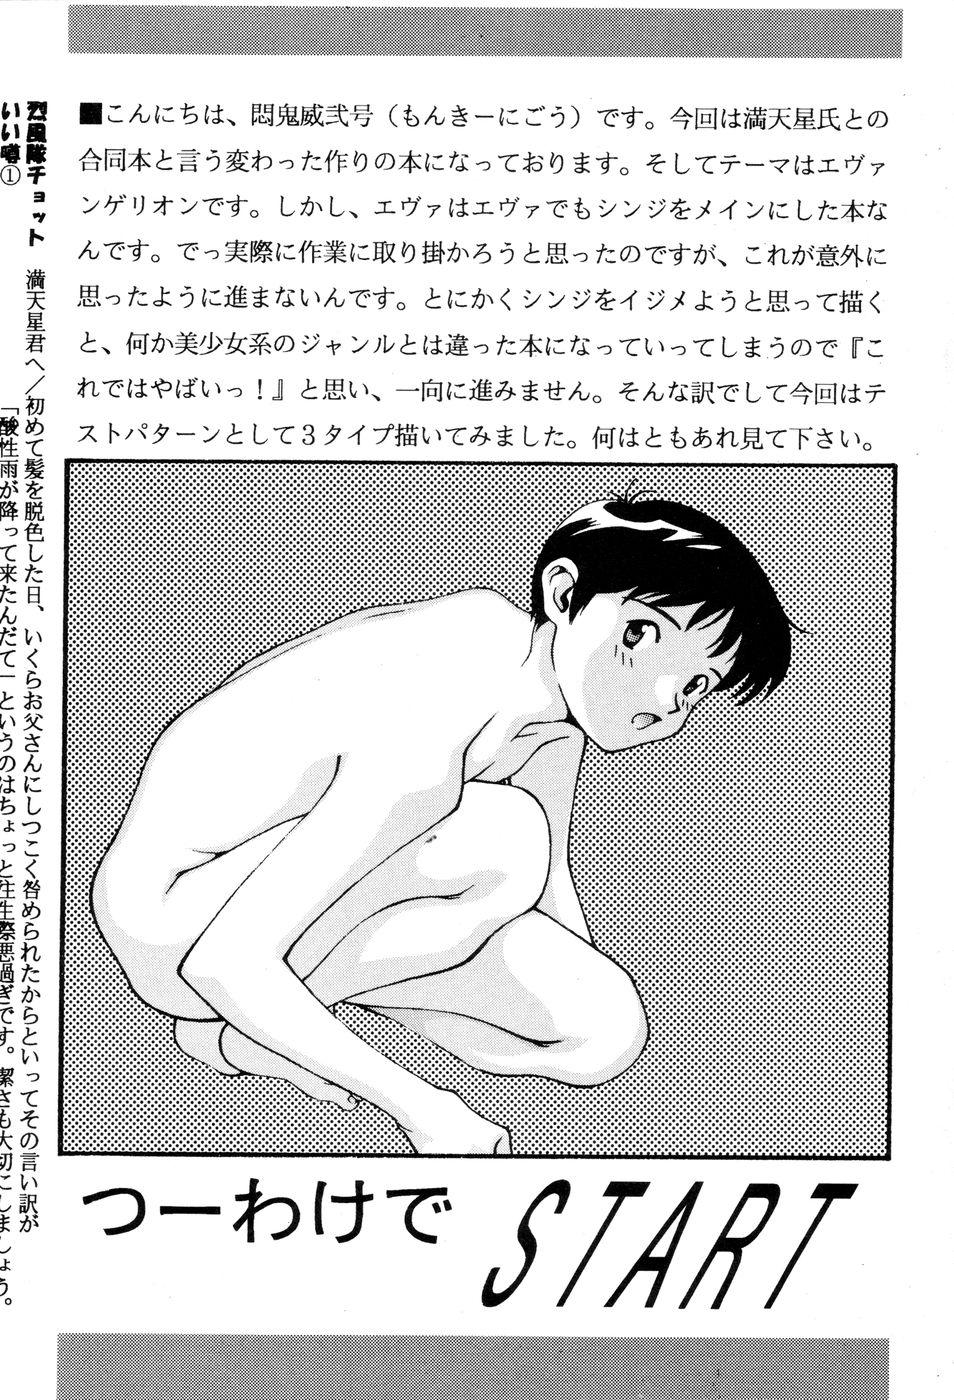 (C49) [Otoko Doushi (Doudantsutsuji,Monkey Ni-gou) Shinji De Shinji (Neon Genesis Evangelion) 21